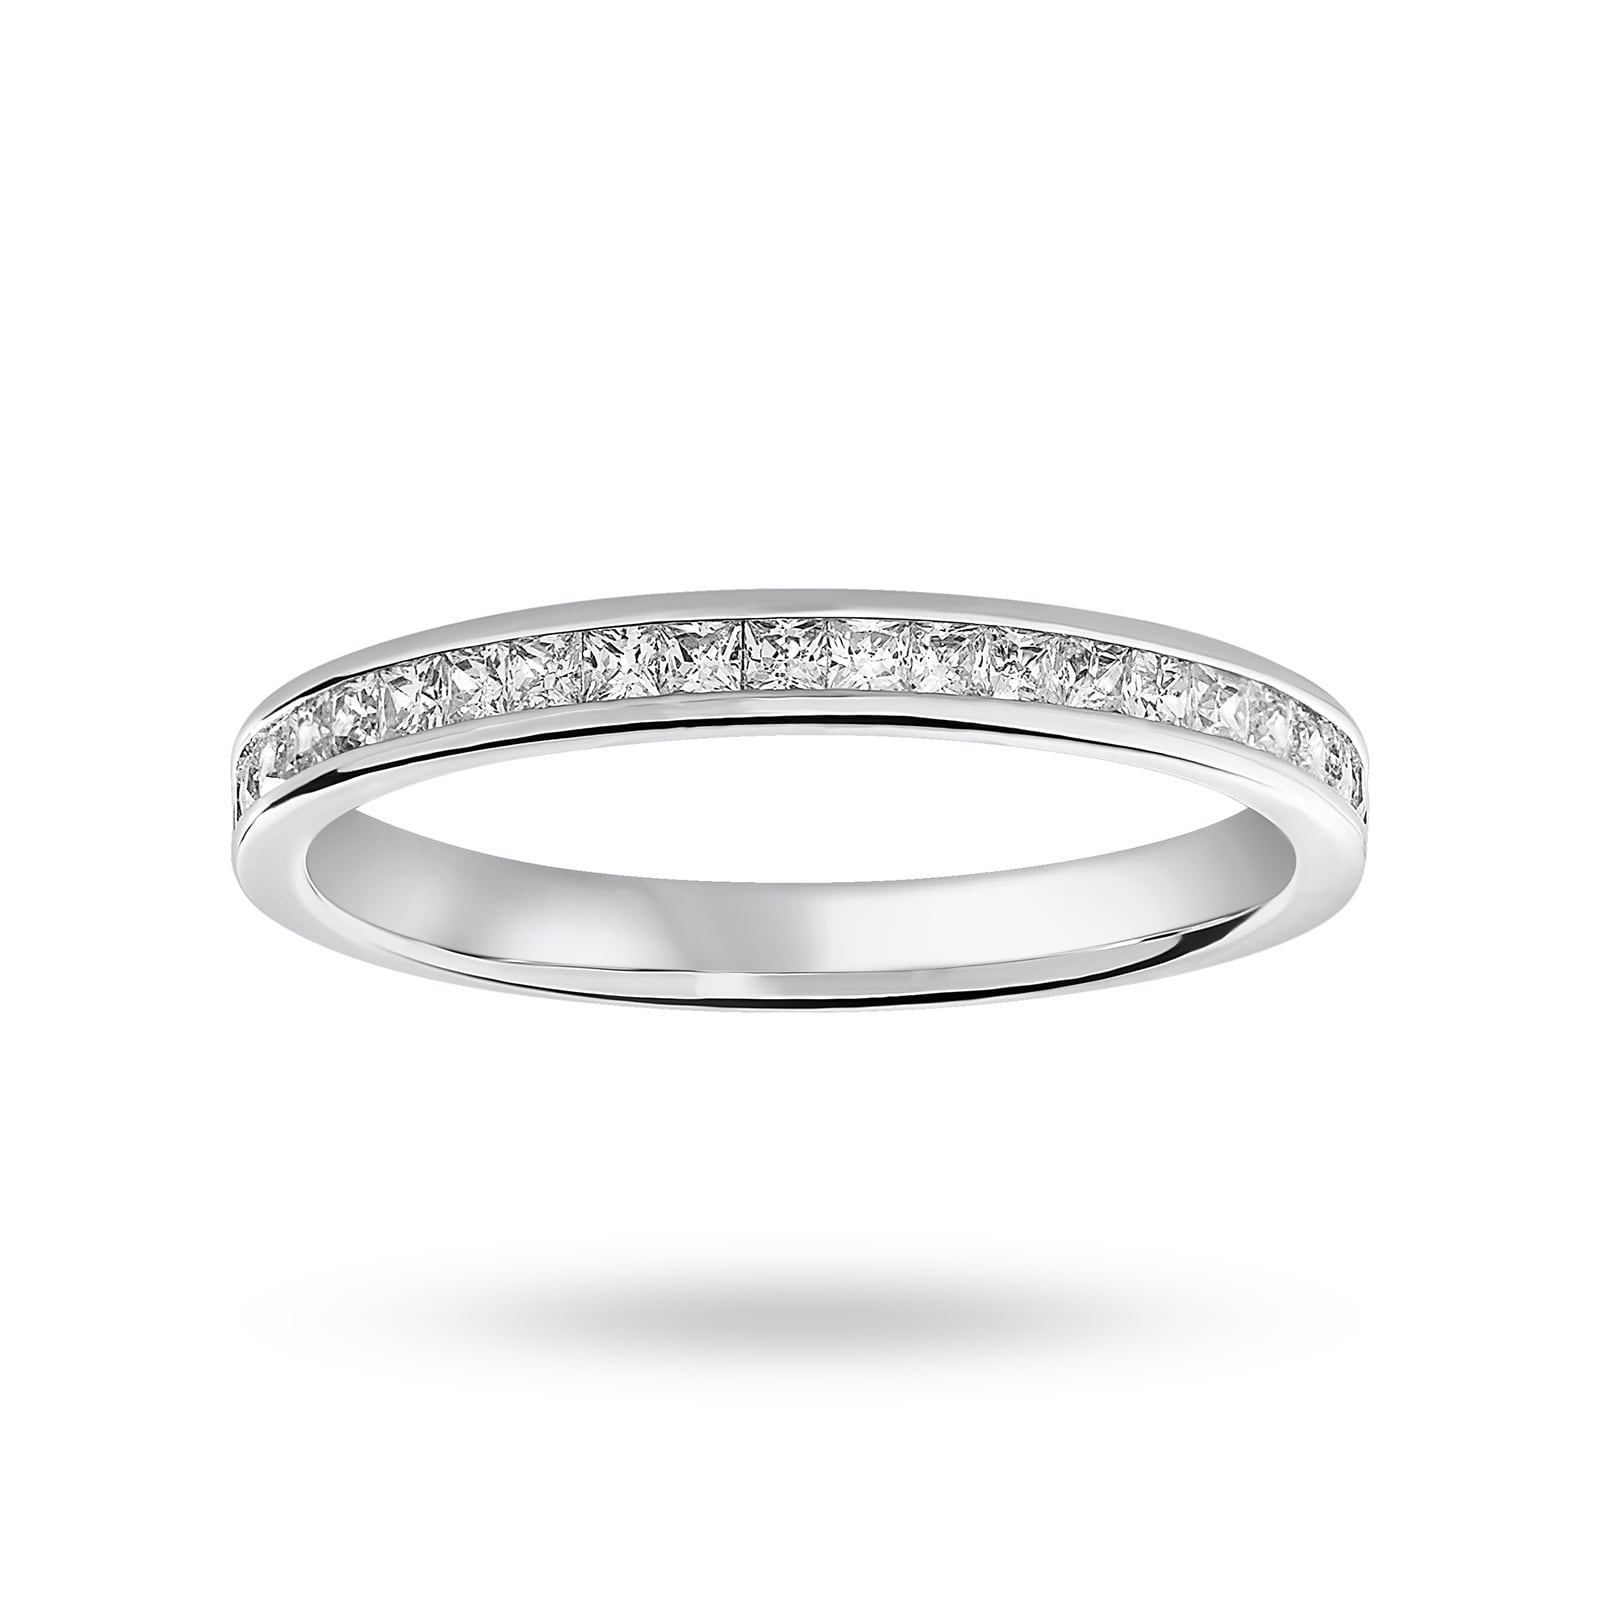 18 Carat White Gold 0.33 Carat Princess Cut Half Eternity Ring - Ring Size O